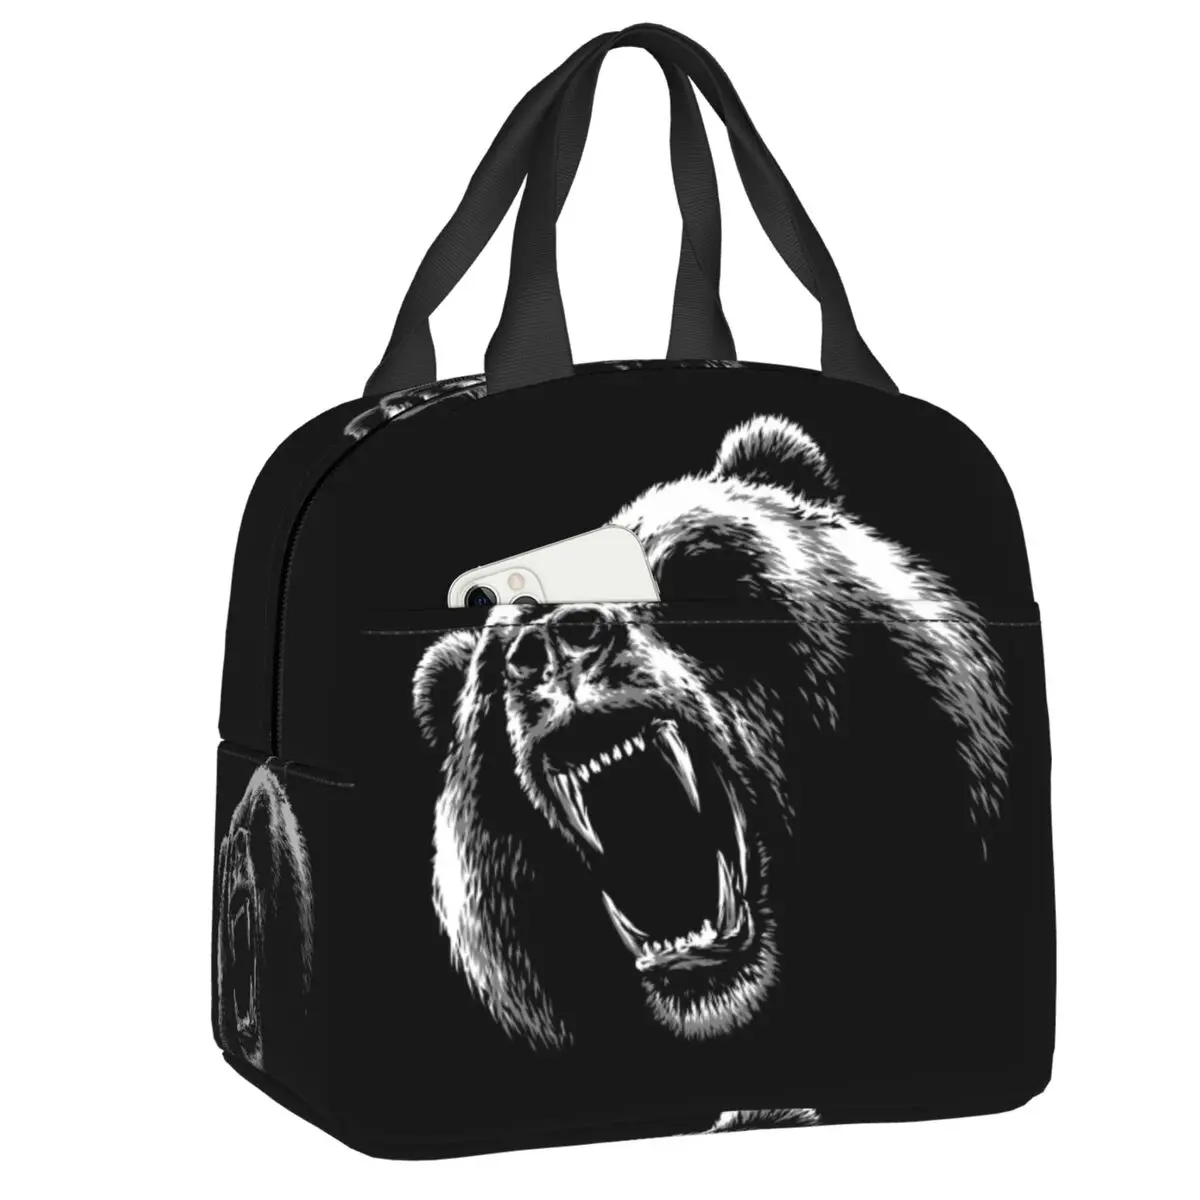  Сердитый черный медведь Изолированная сумка для ланча Герметичный теплый охладитель Термо Ланч Бокс для женщин Дети Школьники Дети Еда Большие Сумки